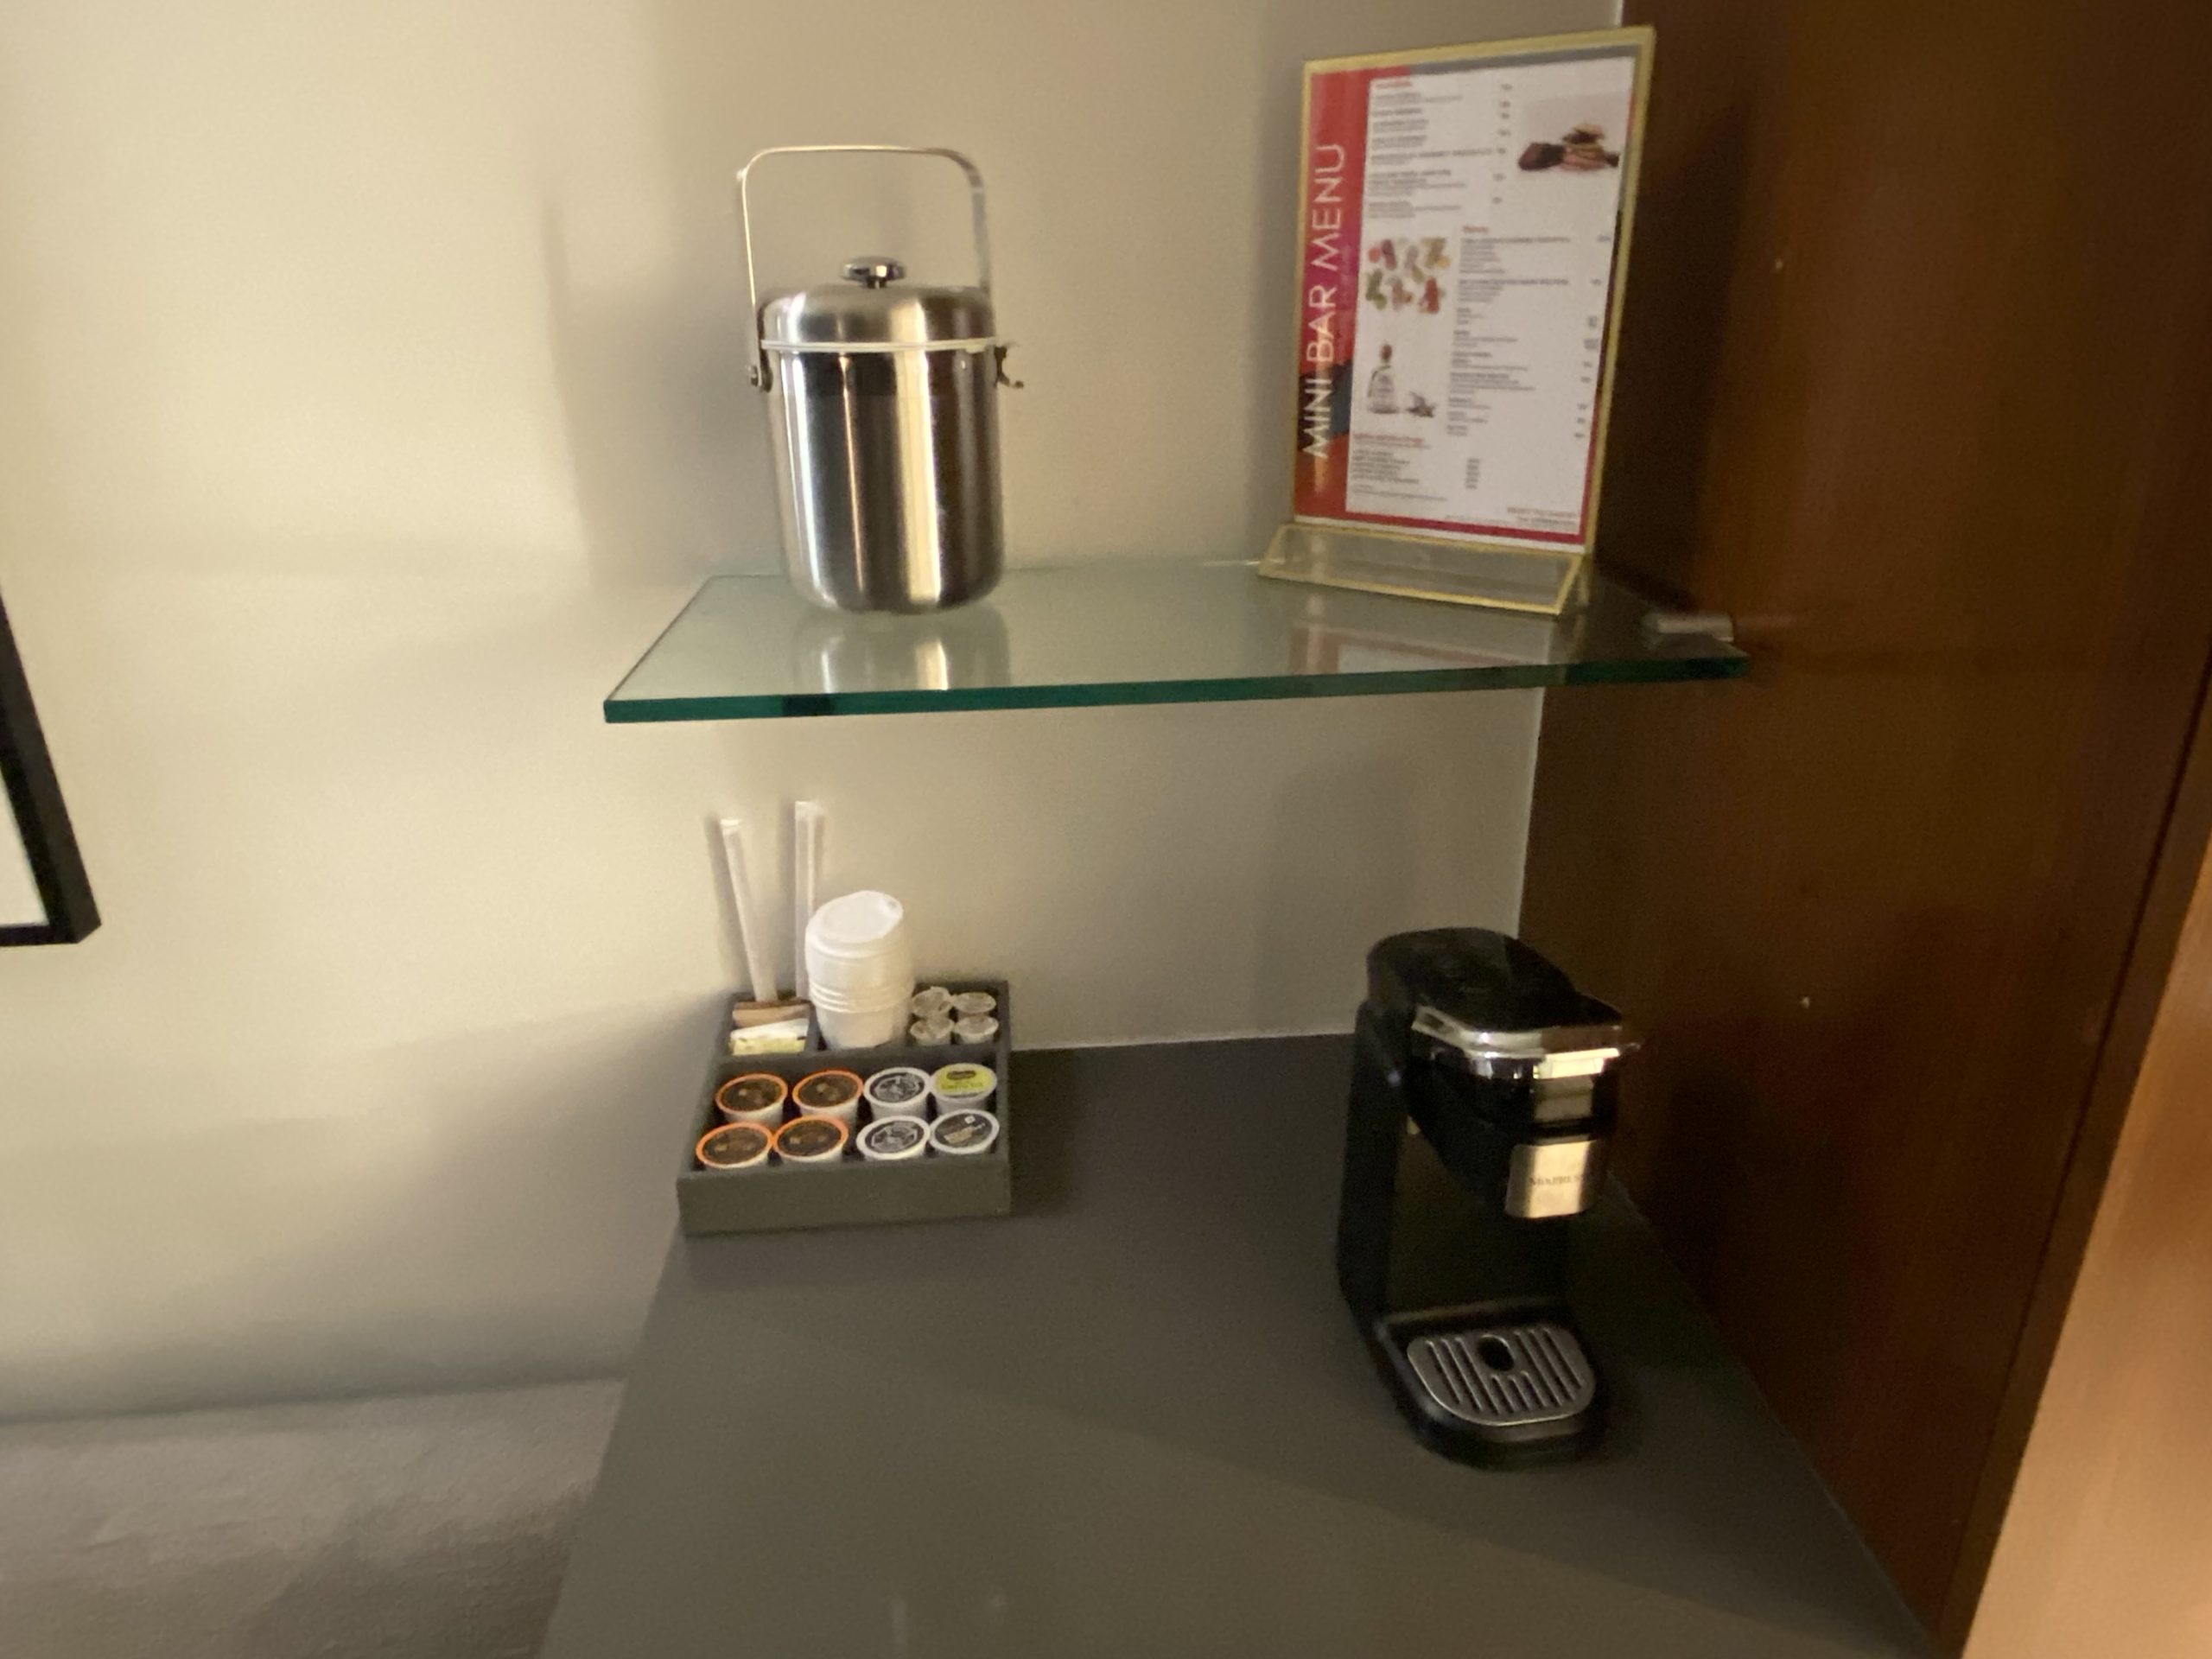 a glass shelf with a coffee maker and a menu